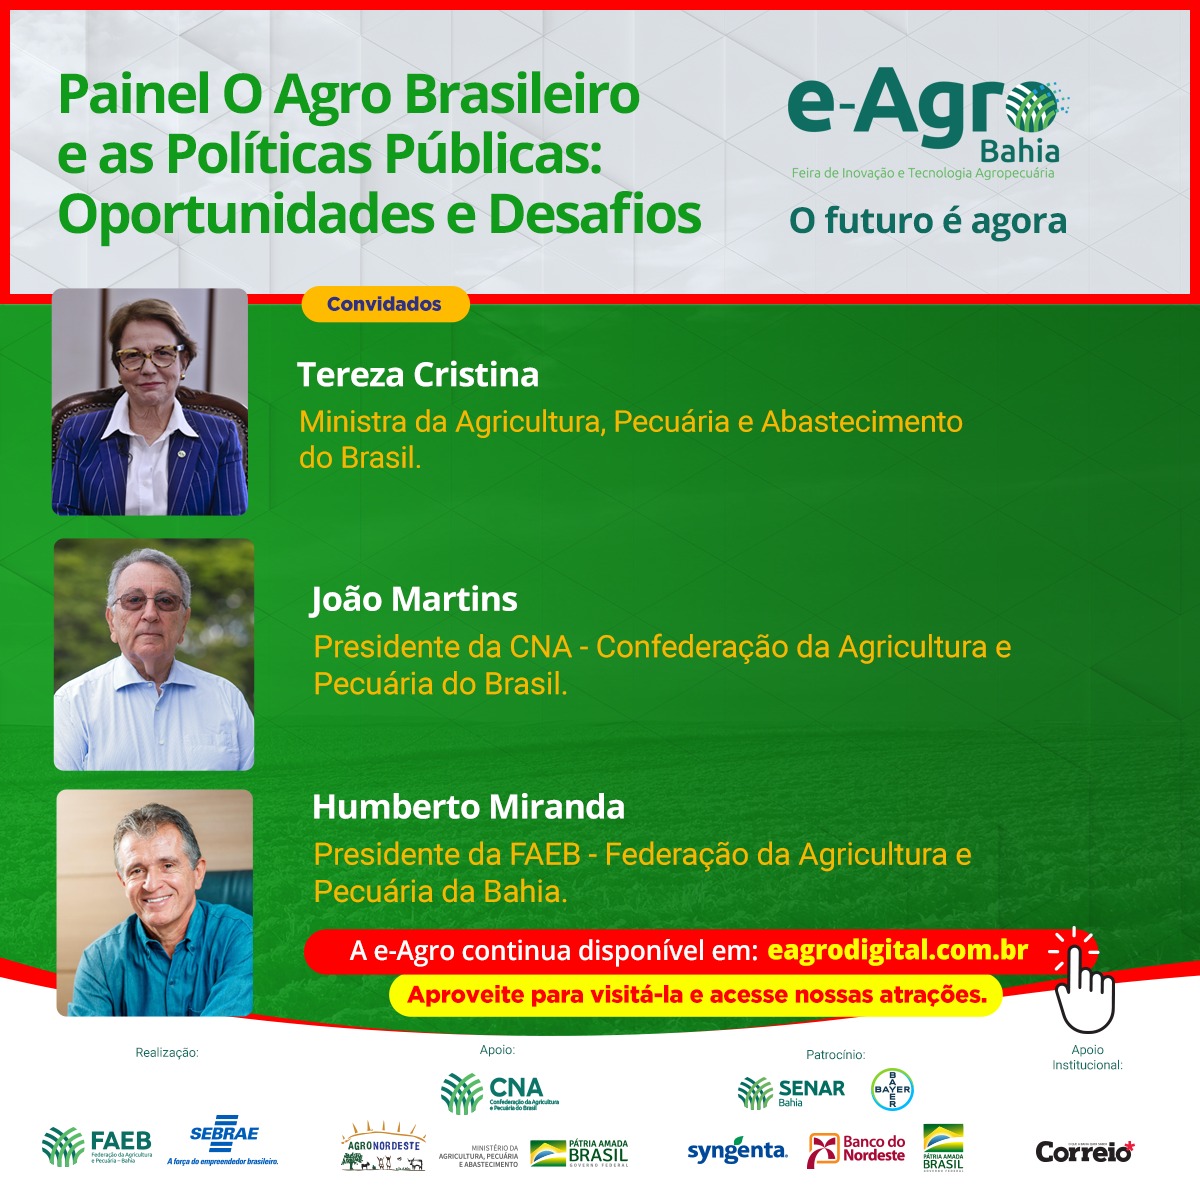 e-Agro Digital 2020 - Painel "O Agro Brasileiro e Políticas Públicas: Oportunidades e Desafios!.